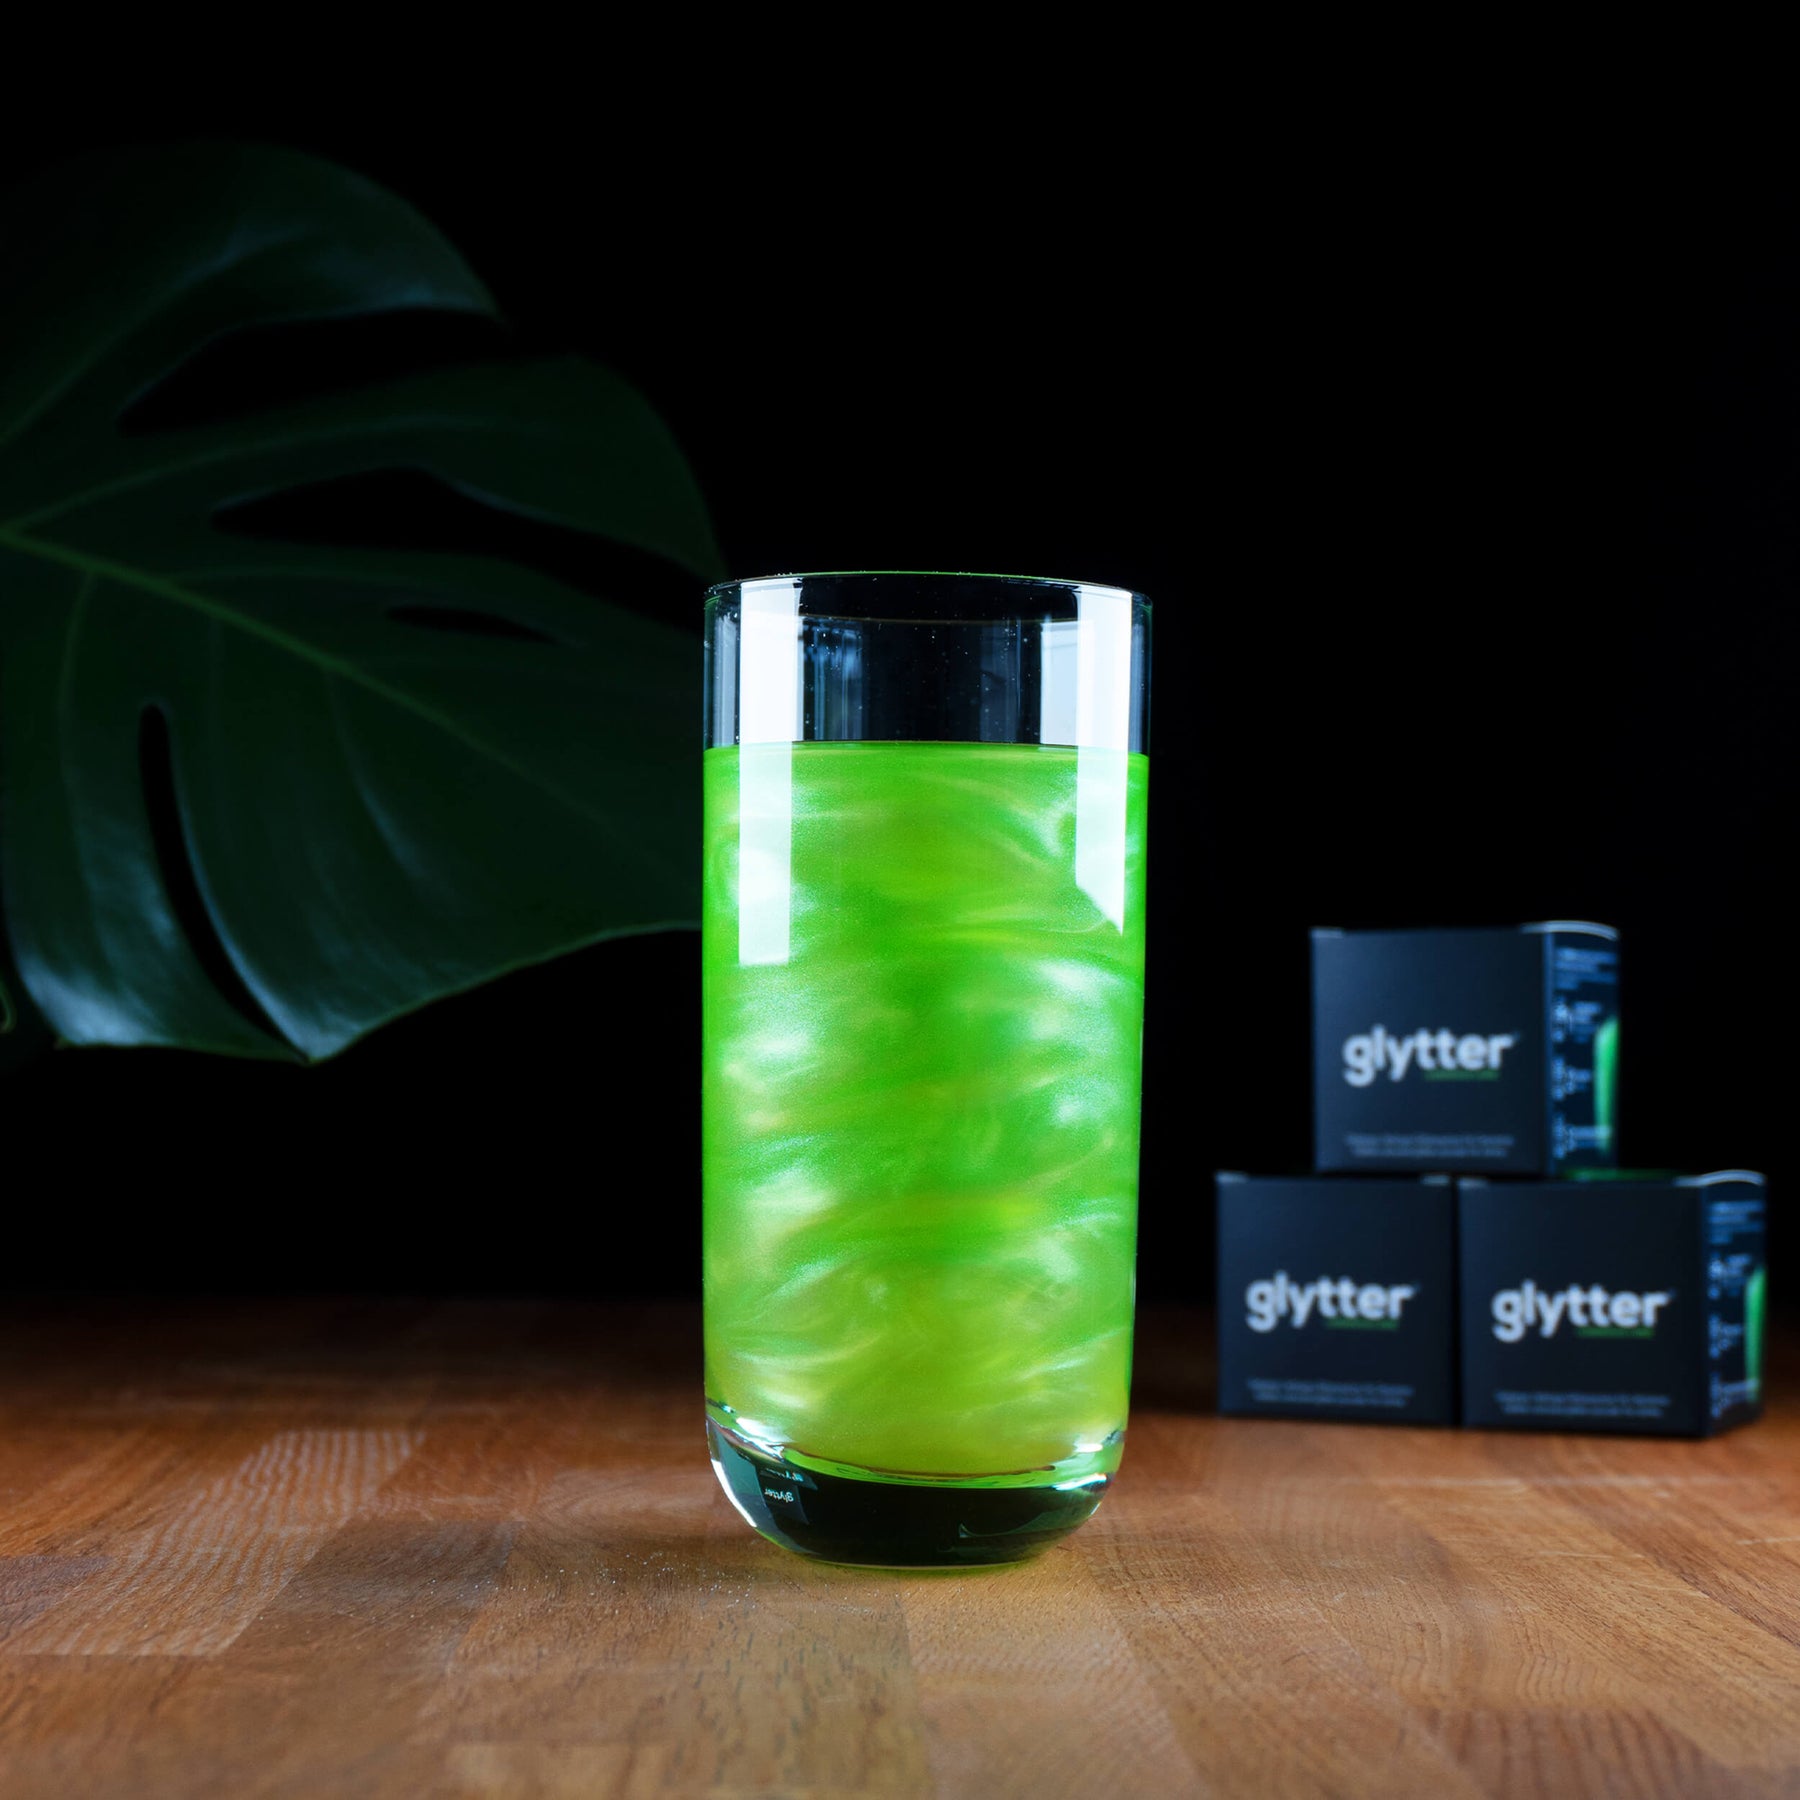 Glytterpulver - macht atemberaubenden Schimmer im Getränk - Neongrün 10g